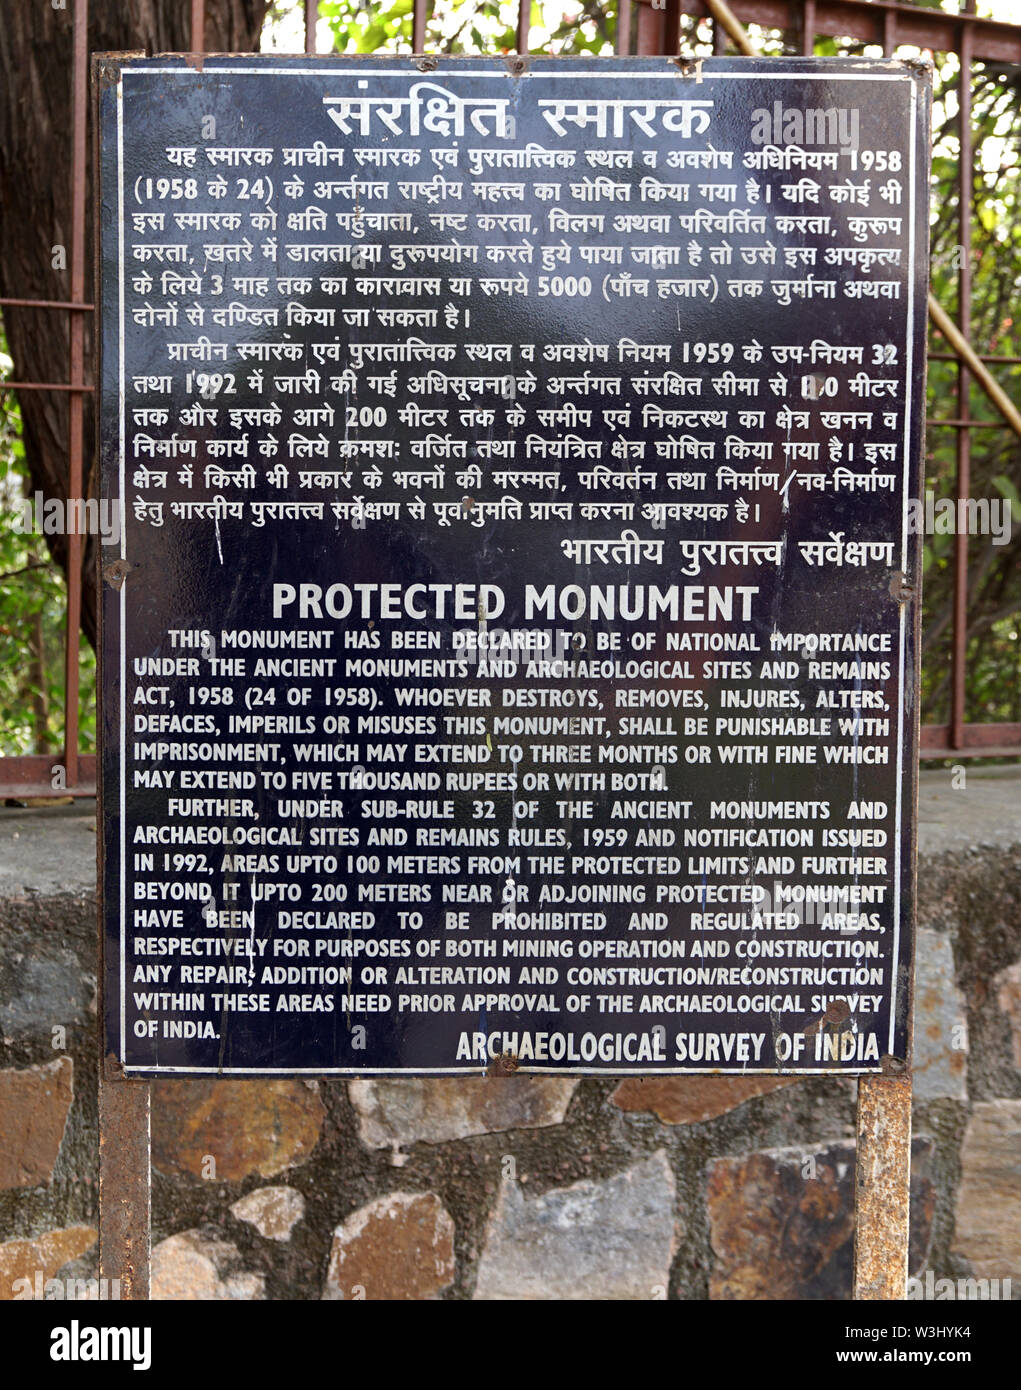 Geschütztes Denkmal Namensschild durch Archäologische übersicht Indien vor zafar Mahal Palace, Mehrauli, Delhi, Indien installiert Stockfoto